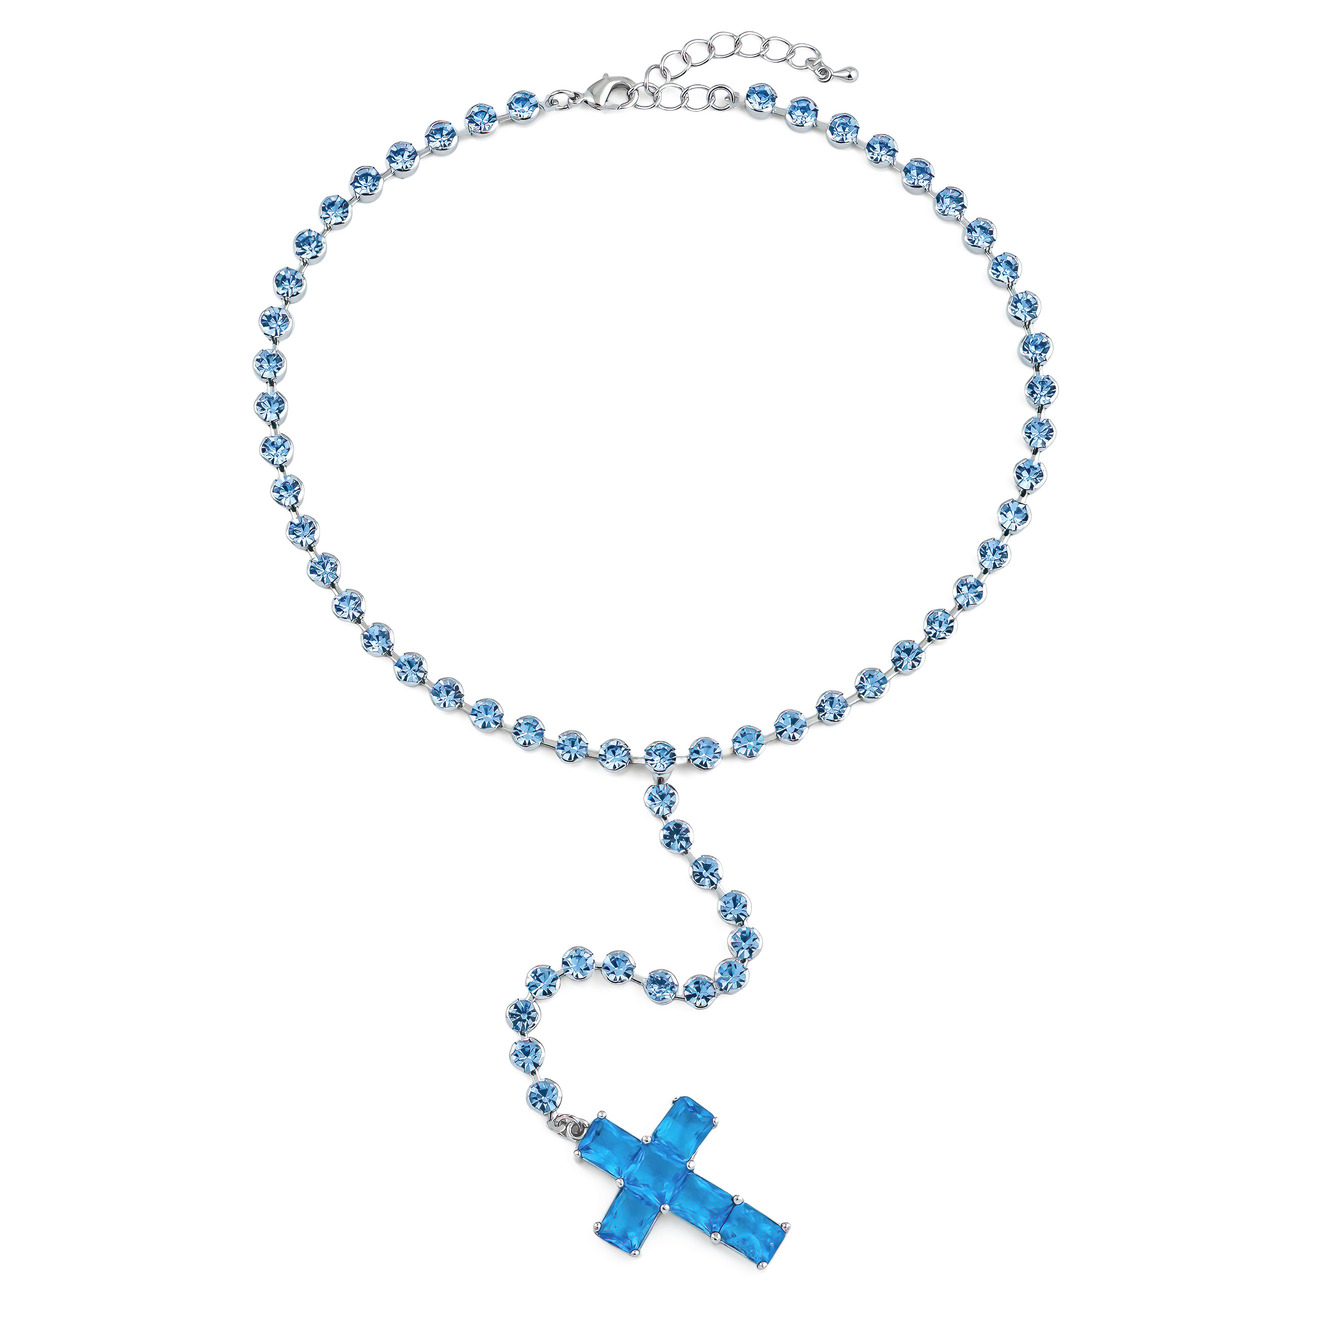 Herald Percy Серебристое колье-галстук с голубыми кристаллами в виде креста herald percy серебристое колье с кристаллами